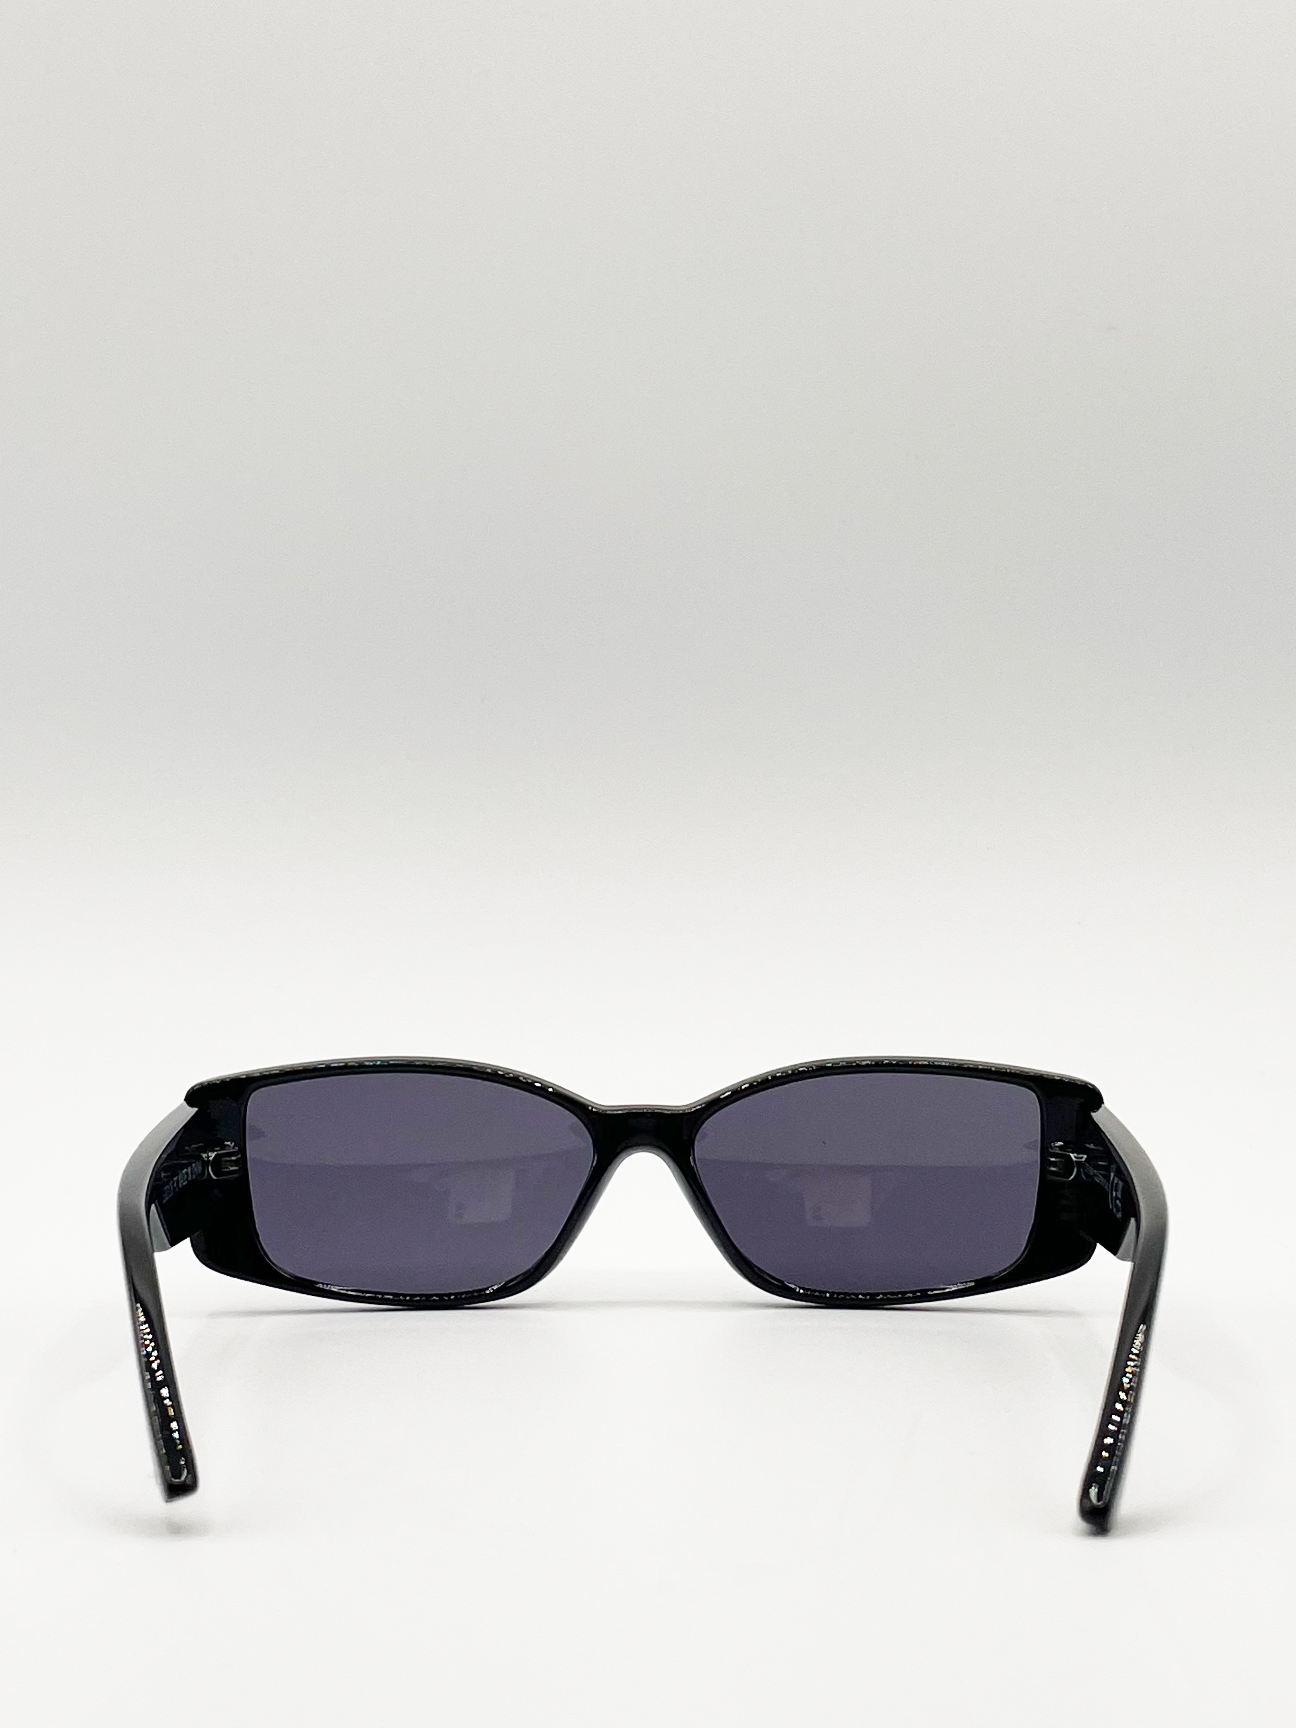 Black Racer Style Oversized Sunglasses with Black Lenses